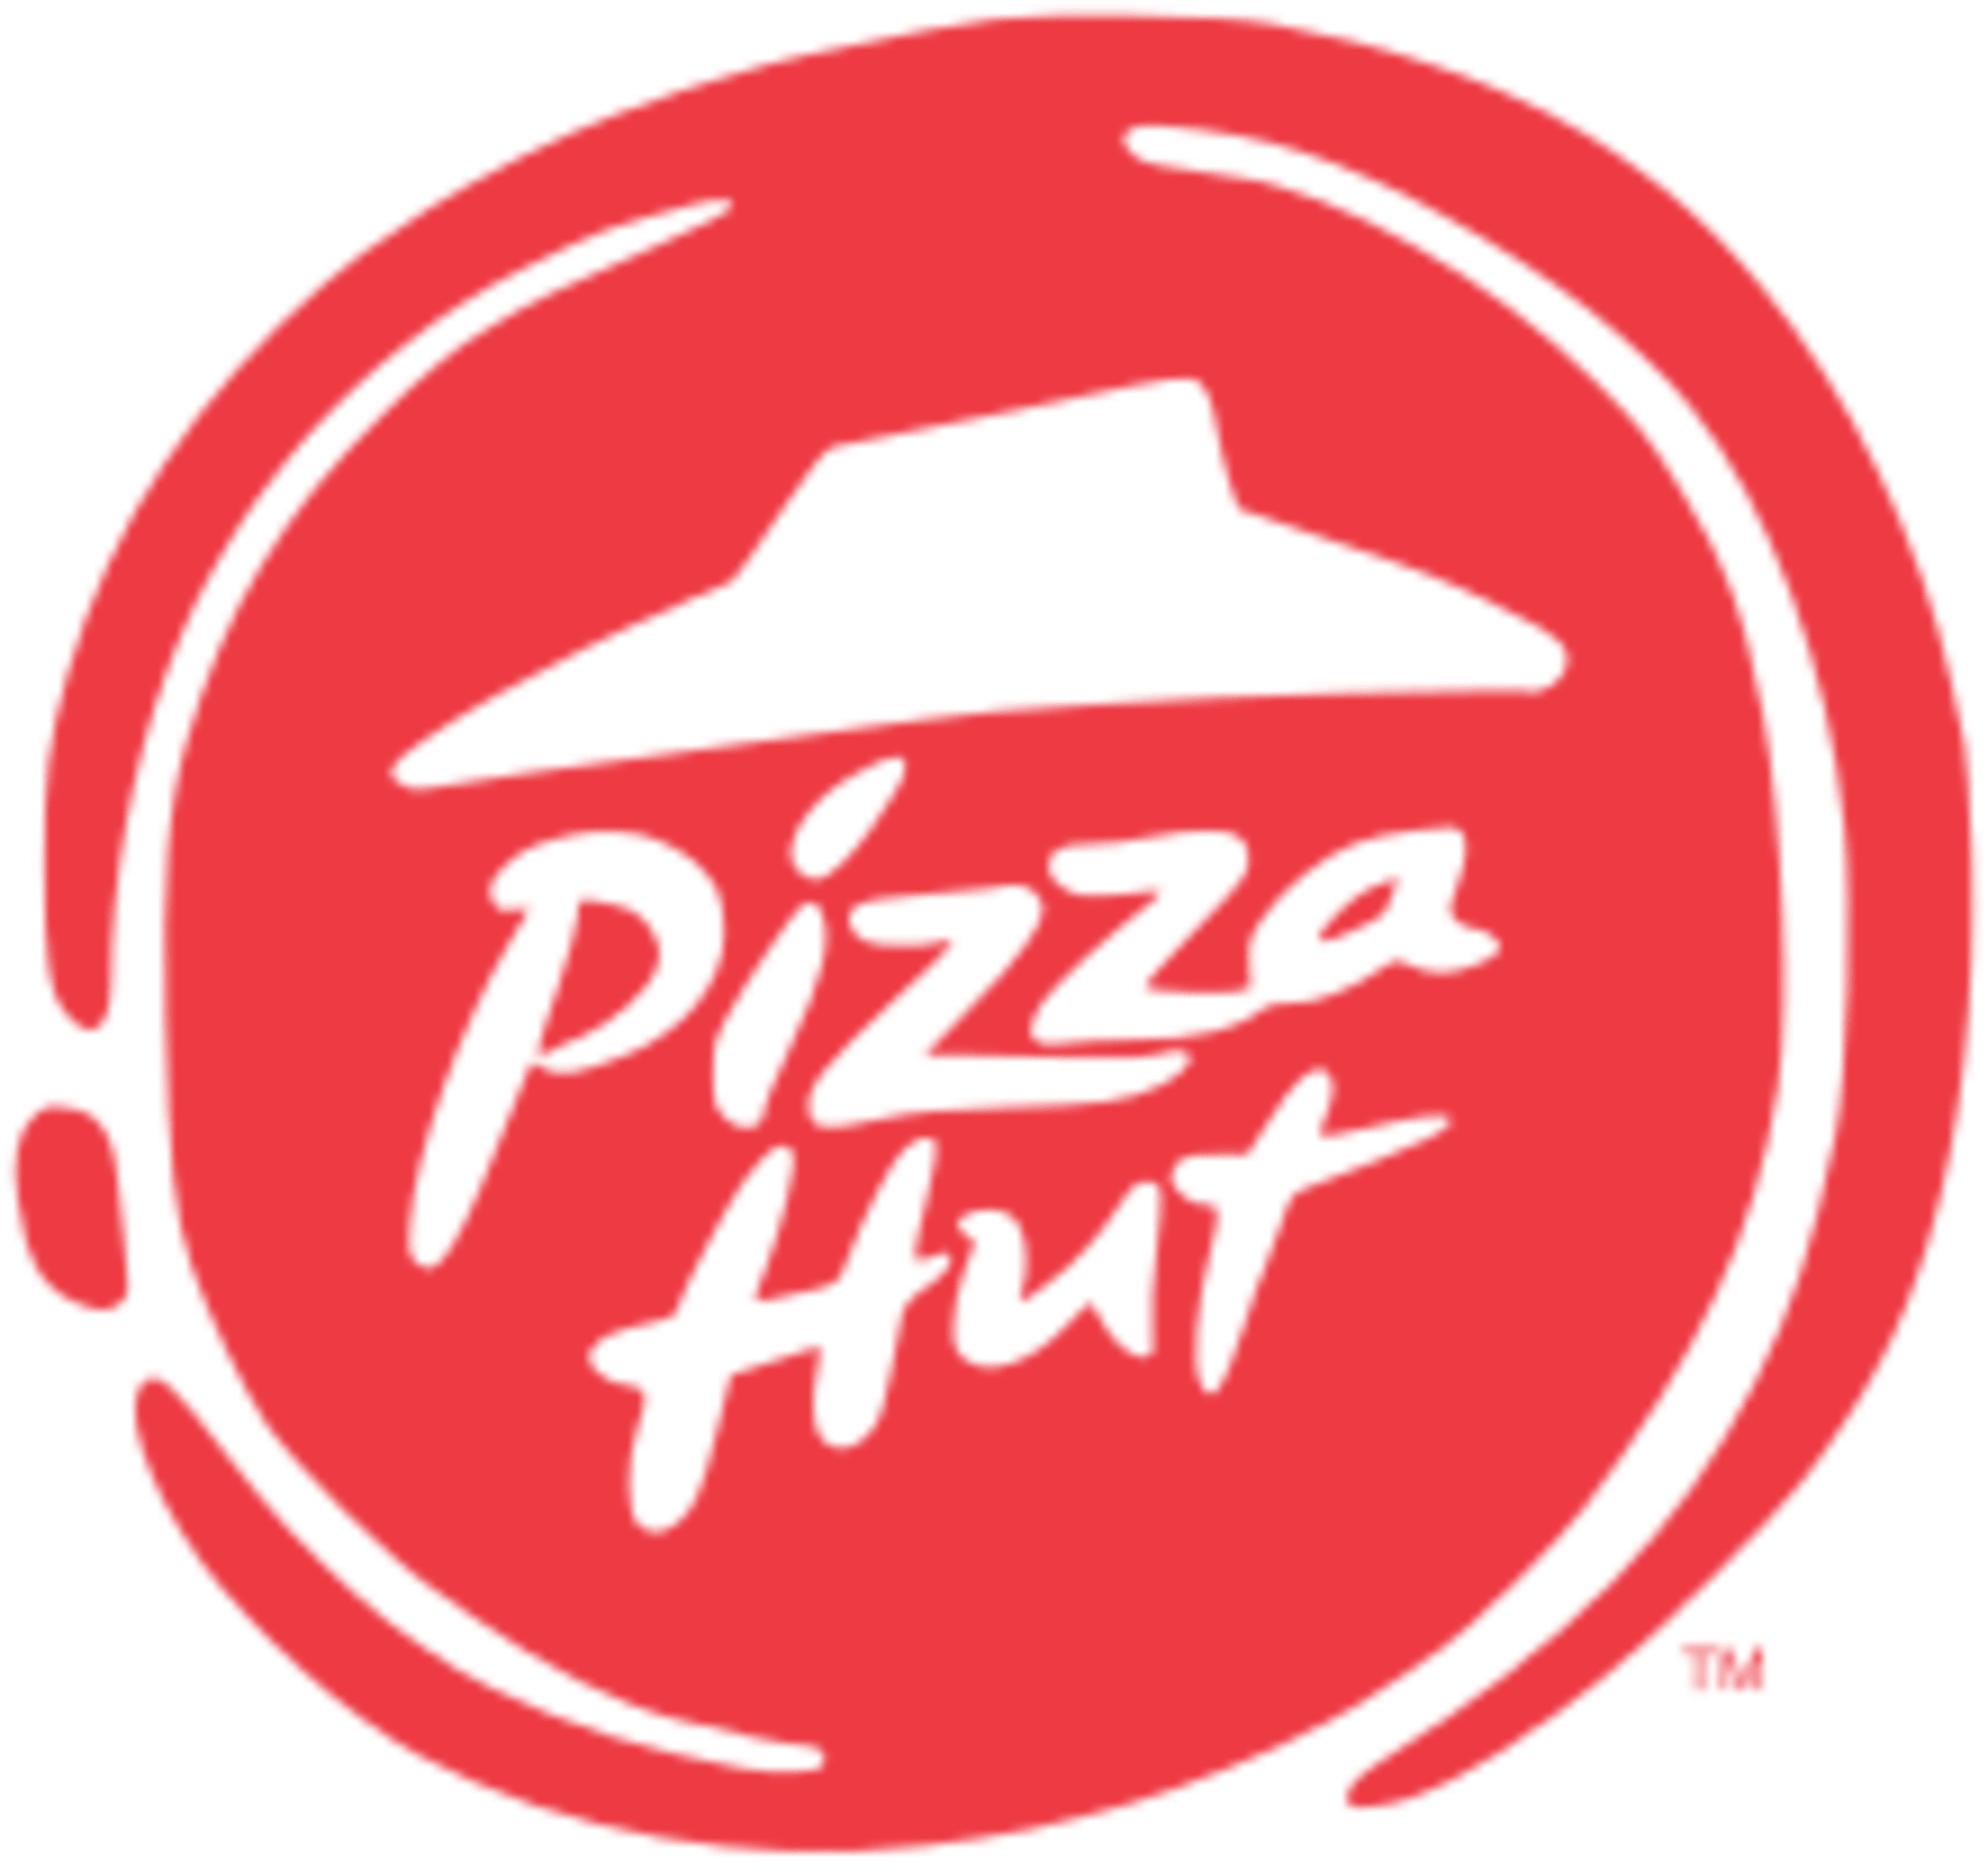 Pizza Hut Code